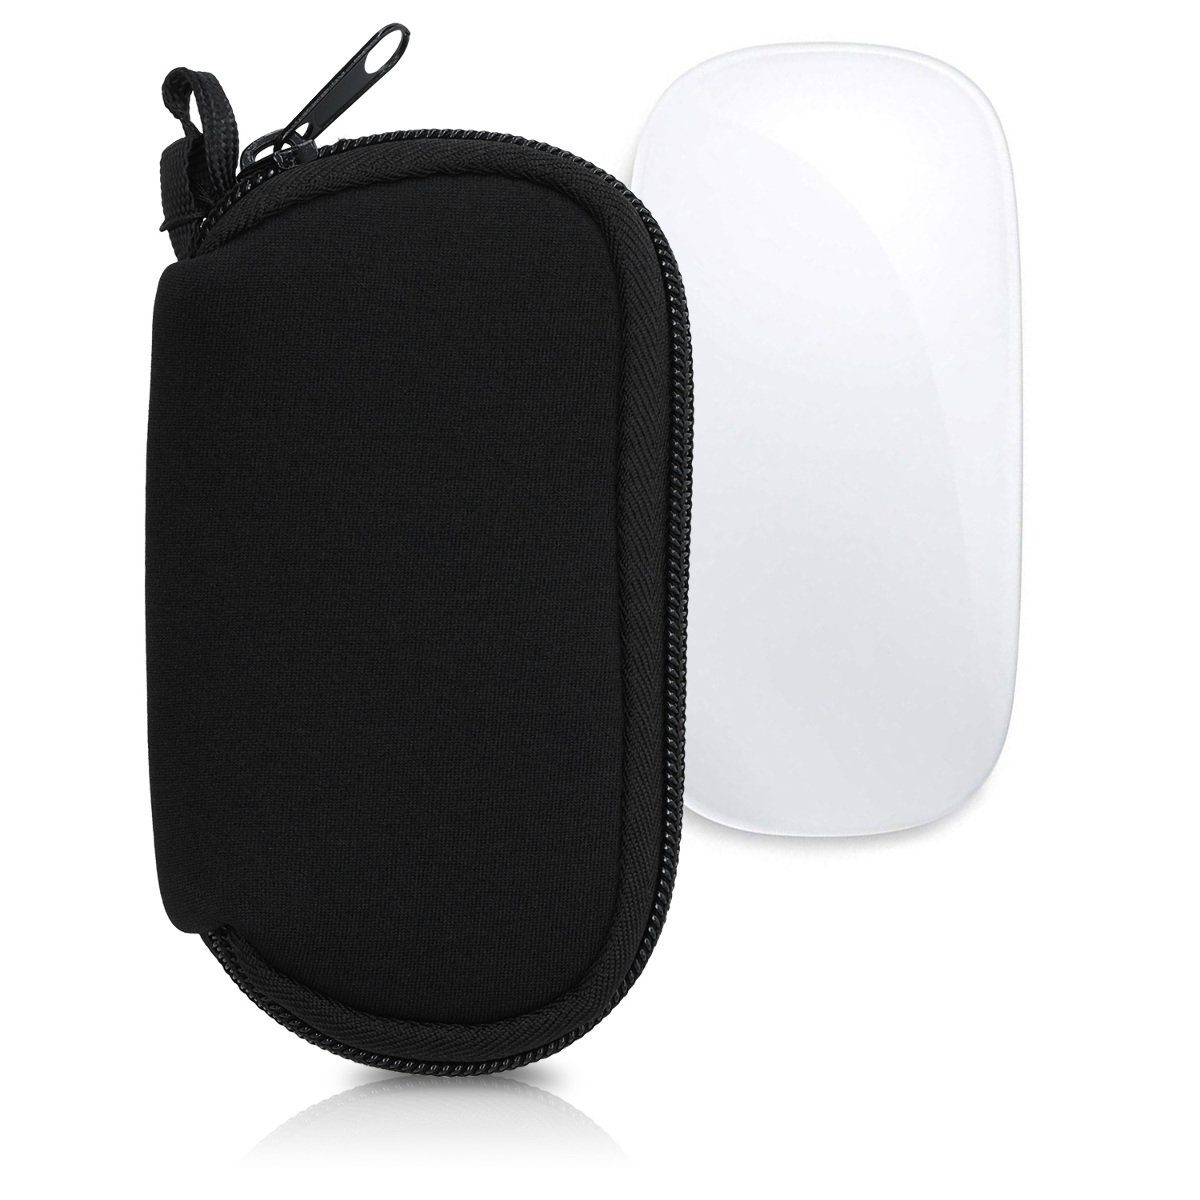 Stilvolle Aufbewahrungshülle für Apple Magic Mouse Reiseschutzhülle Tragetasche Tasche in kompakter Größe mit sicherer Mikrofaser-Innenausstattung Color : Blau, Size : S 